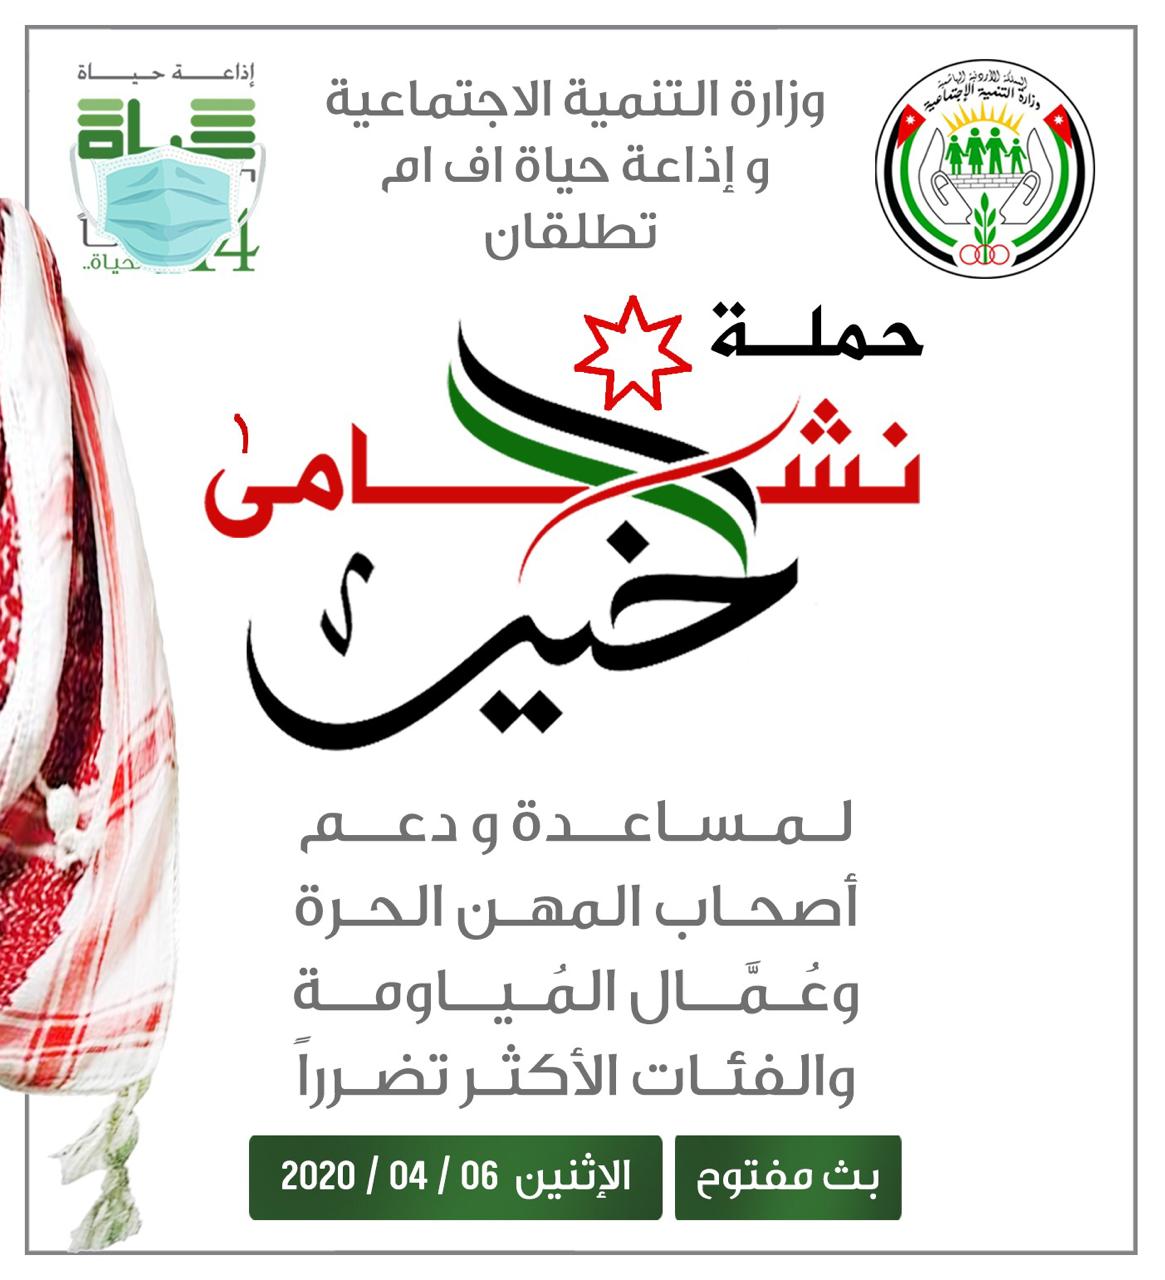 وزارة التنمية الاجتماعية وإذاعة حياة اف ام تطلقان الاثنين المقبل حملة "نشامى الخير"